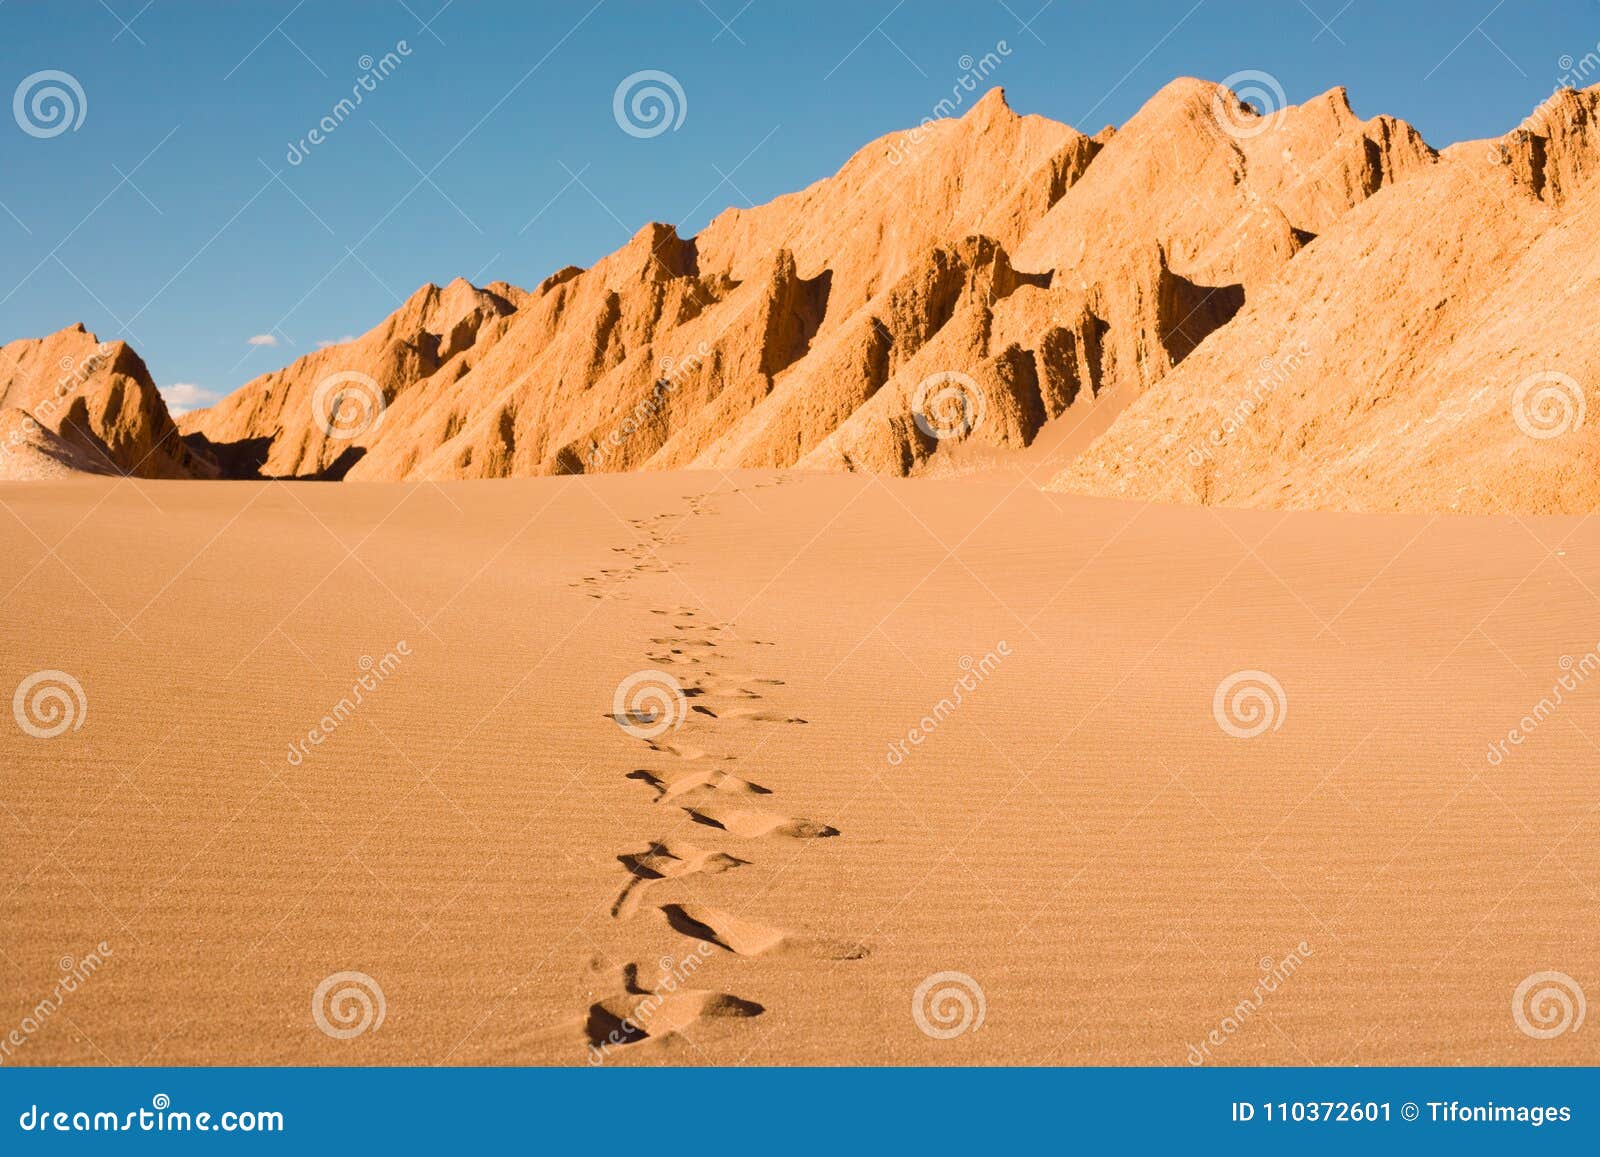 footprints at valle de la muerte in the atacama desert